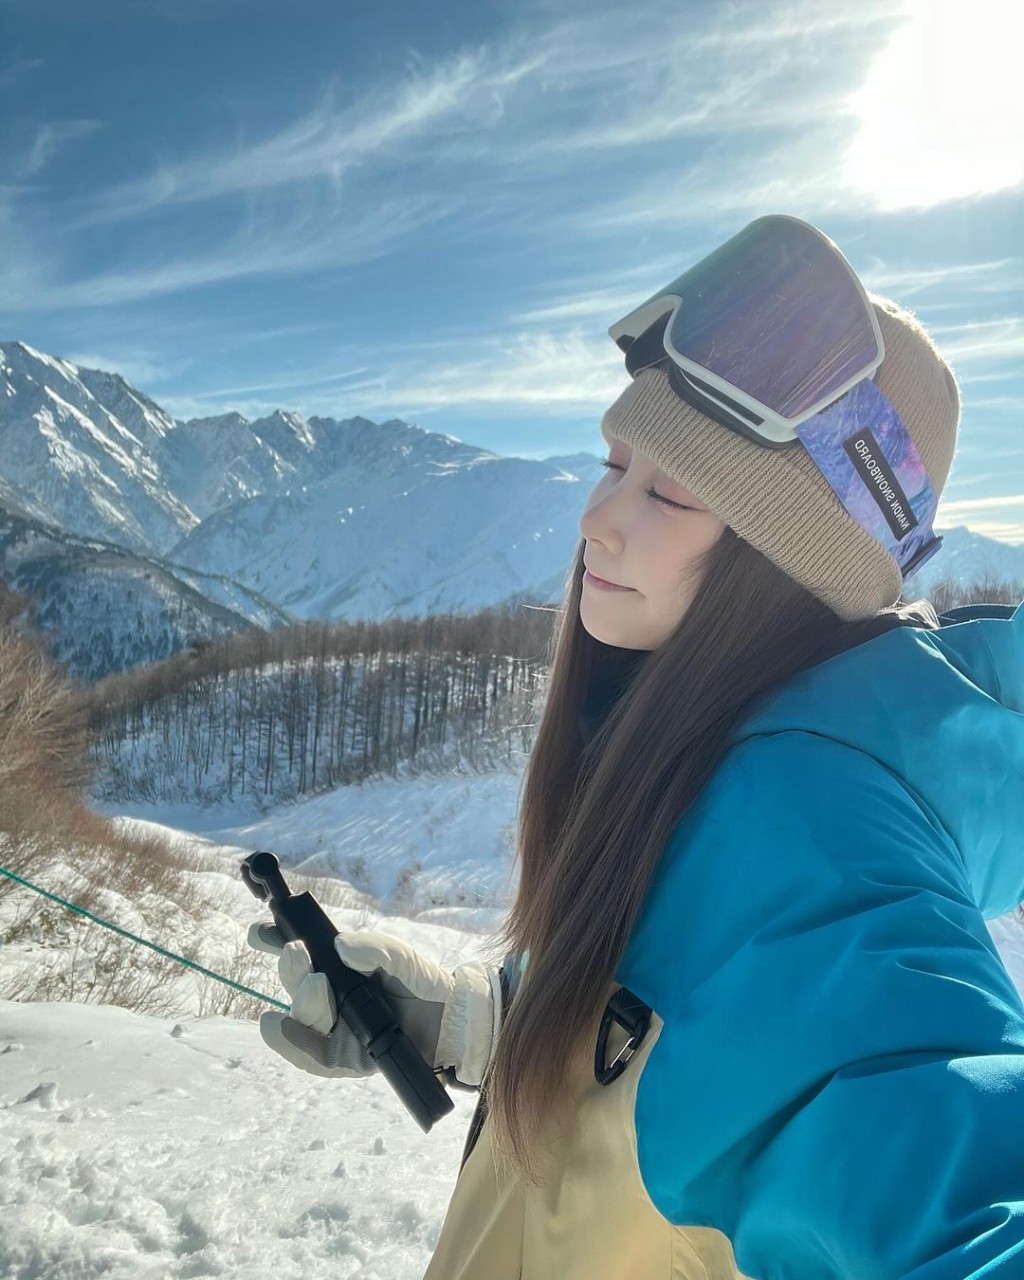 Rose Ma熱愛滑雪。